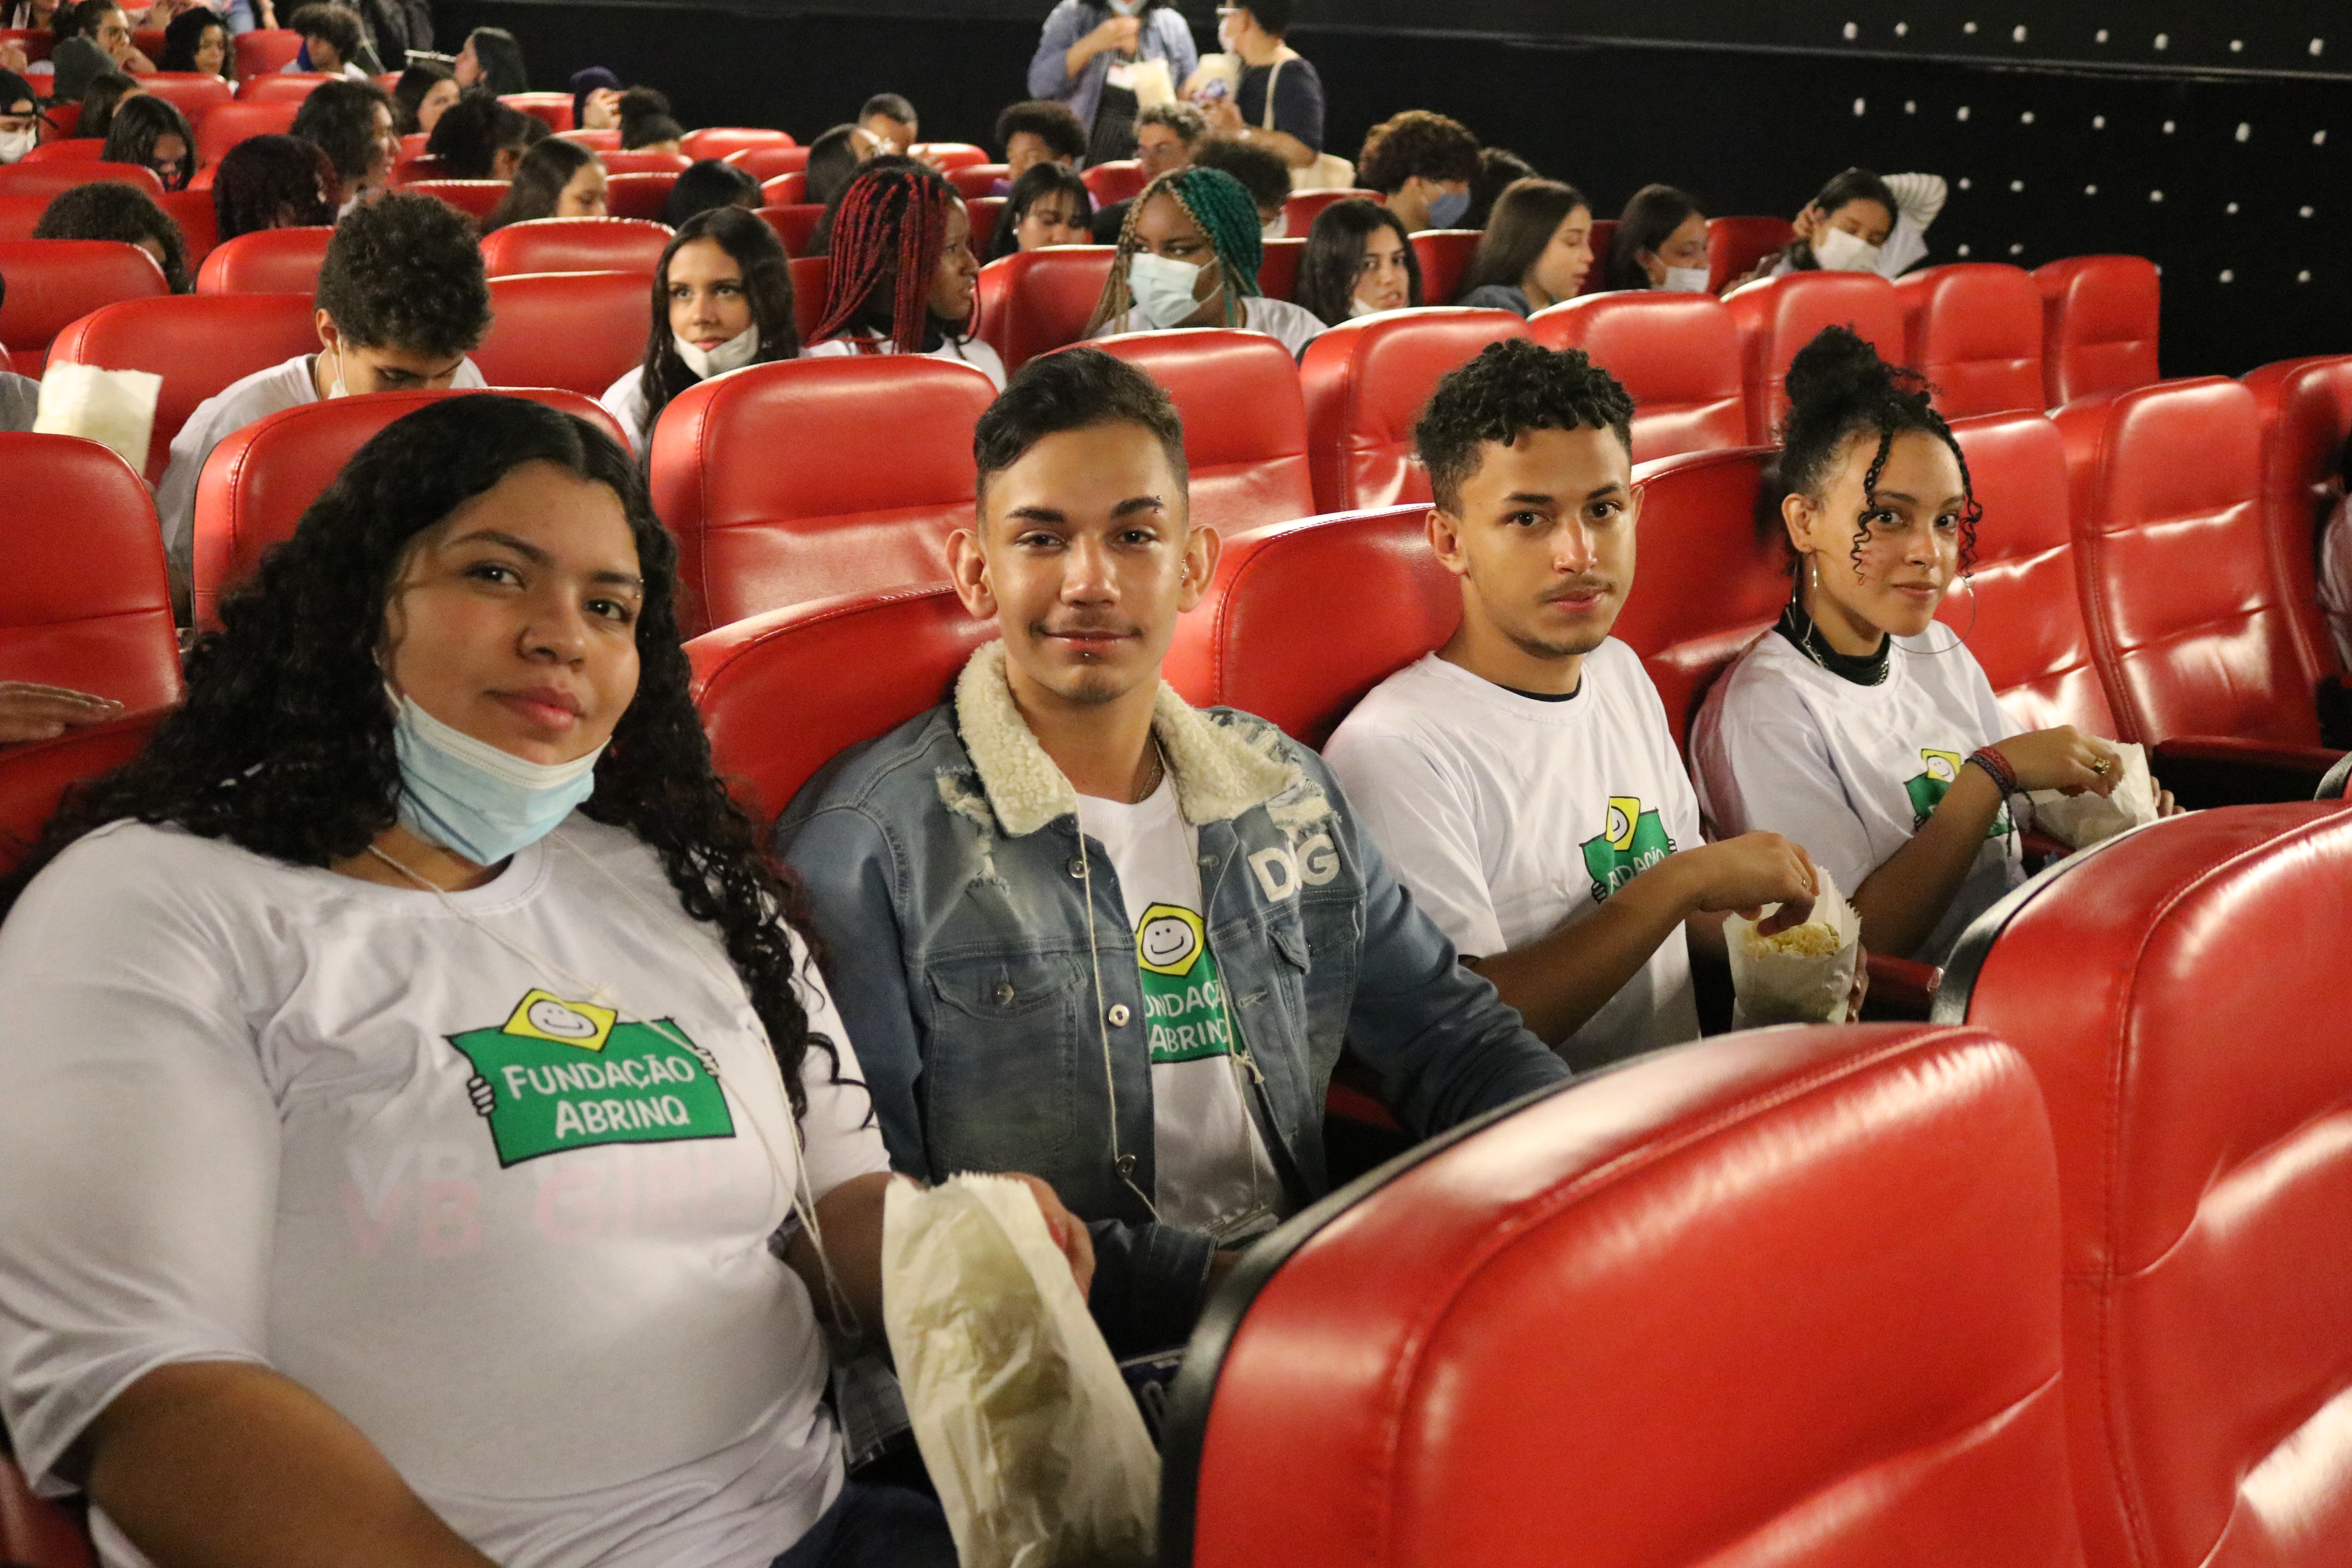 Fundação Abrinq leva adolescentes ao cinema e os estimula a pensar sobre si mesmos e sobre seus futuros